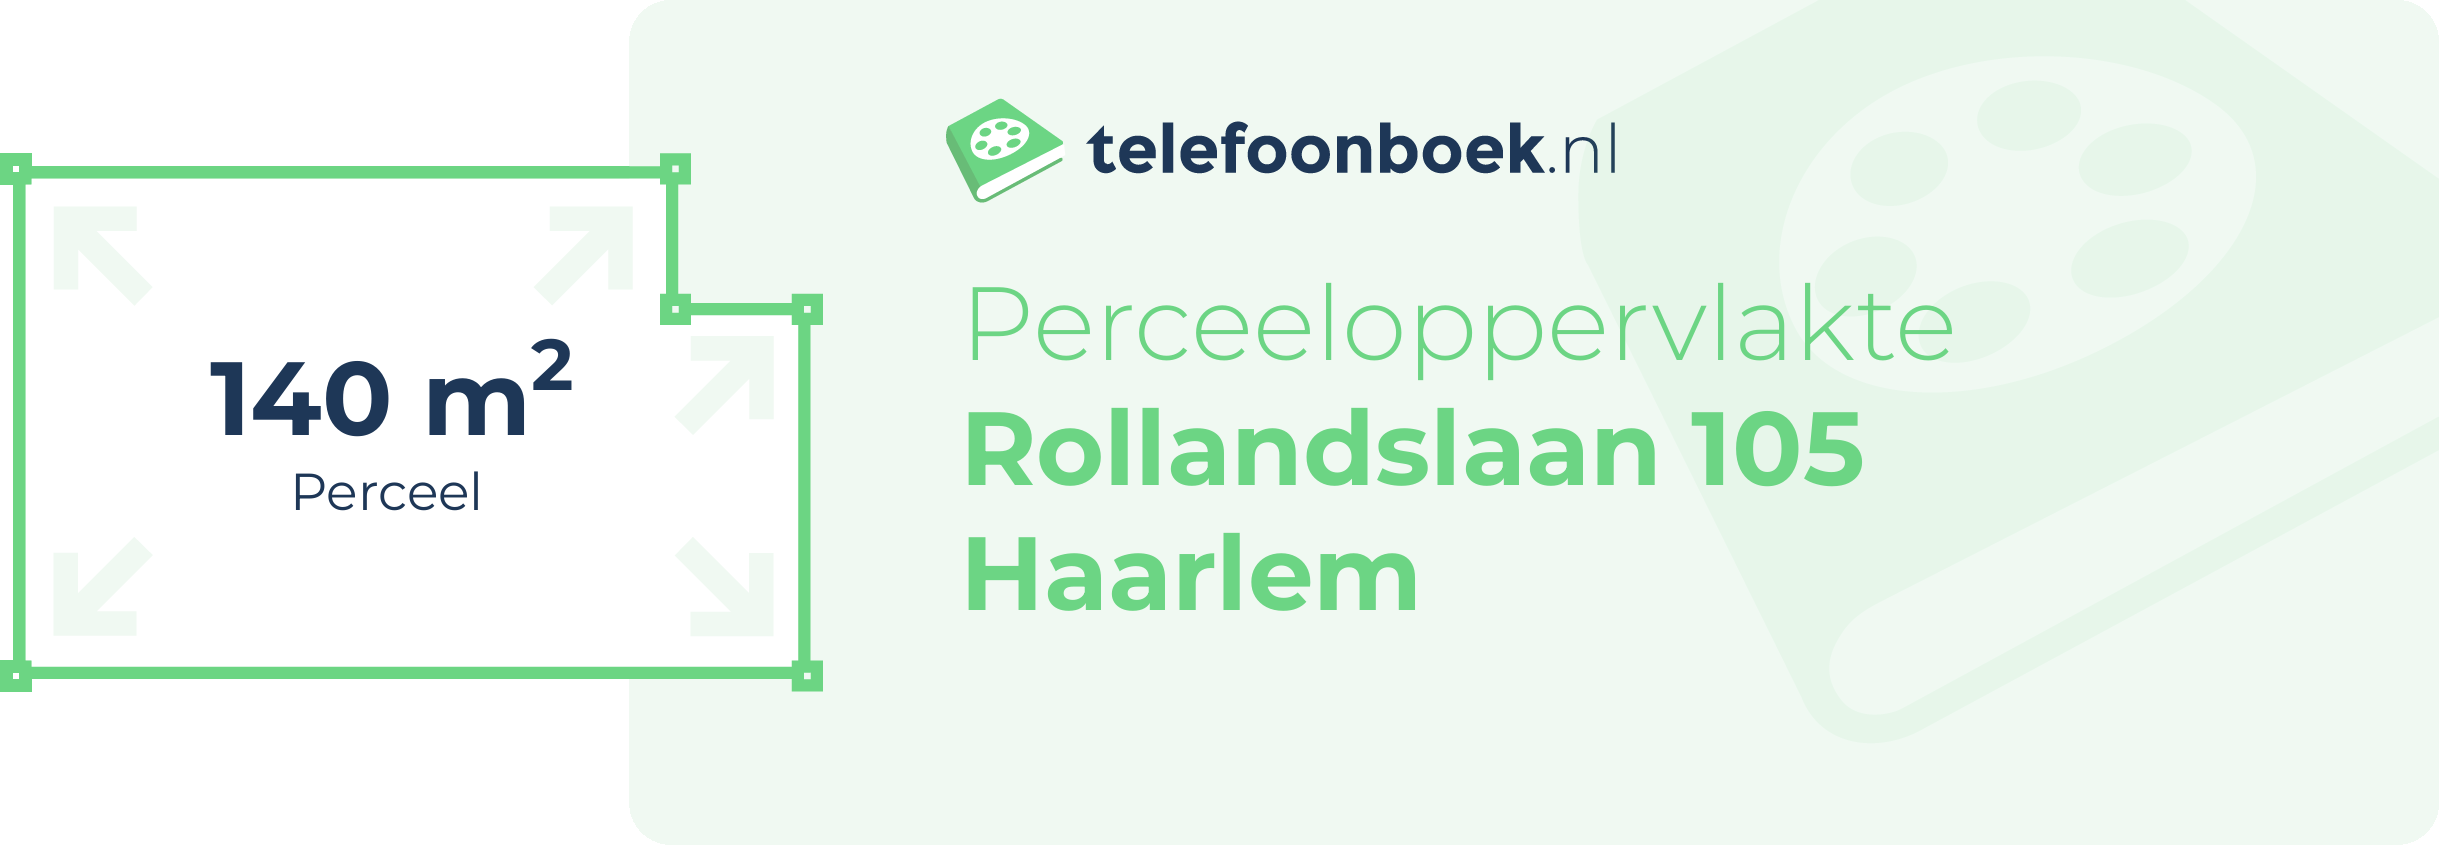 Perceeloppervlakte Rollandslaan 105 Haarlem